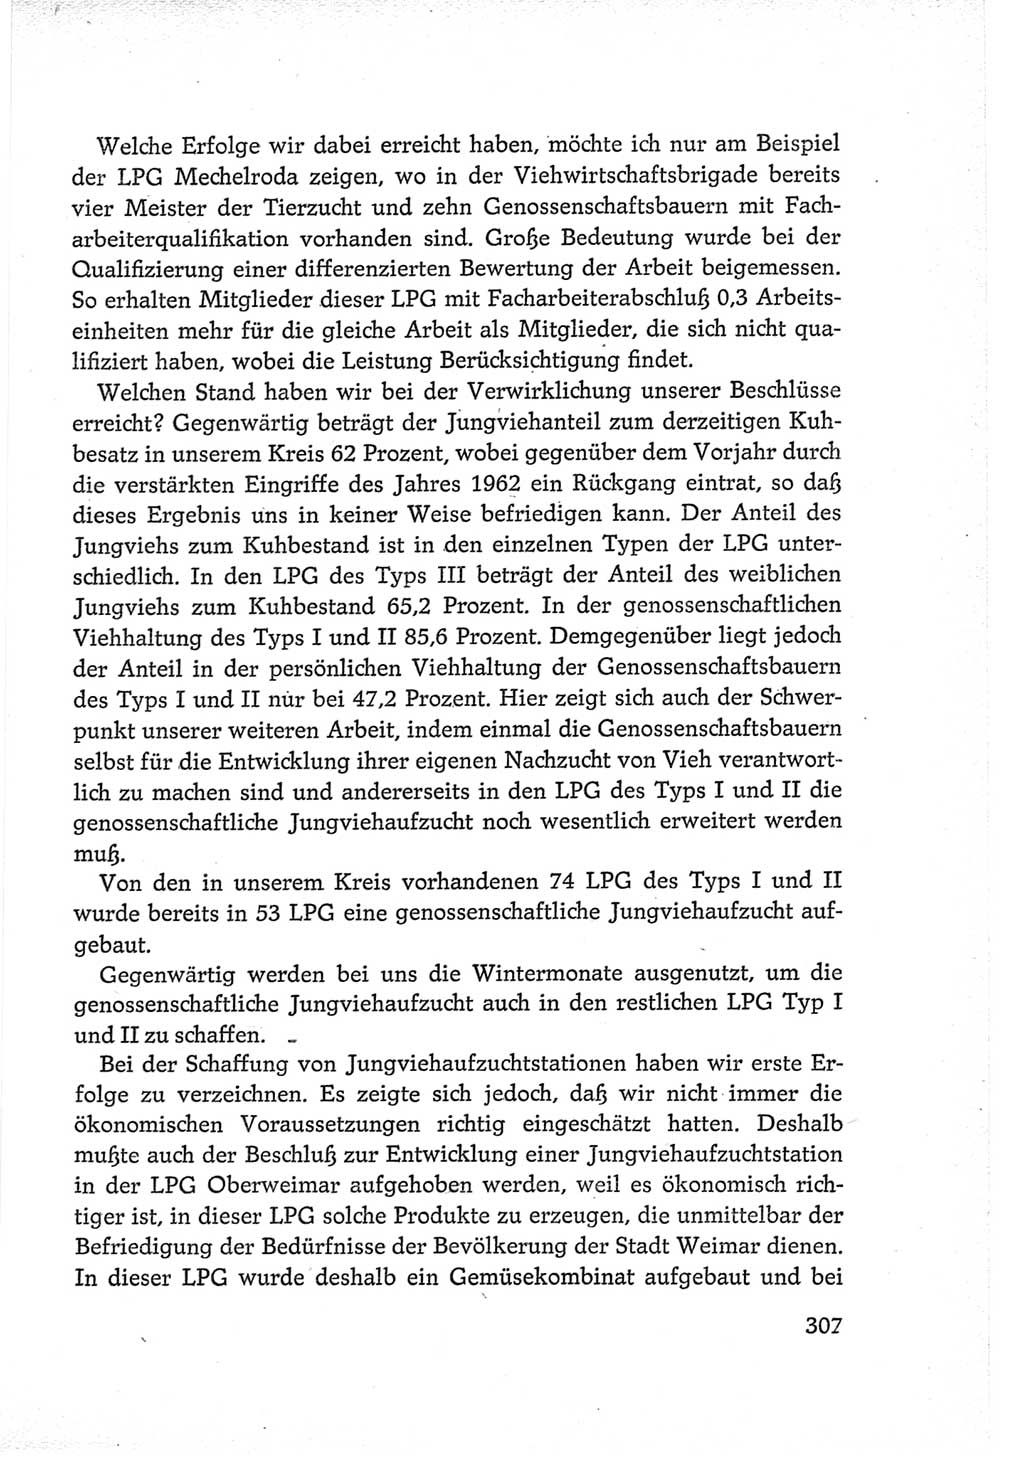 Protokoll der Verhandlungen des Ⅵ. Parteitages der Sozialistischen Einheitspartei Deutschlands (SED) [Deutsche Demokratische Republik (DDR)] 1963, Band Ⅲ, Seite 307 (Prot. Verh. Ⅵ. PT SED DDR 1963, Bd. Ⅲ, S. 307)